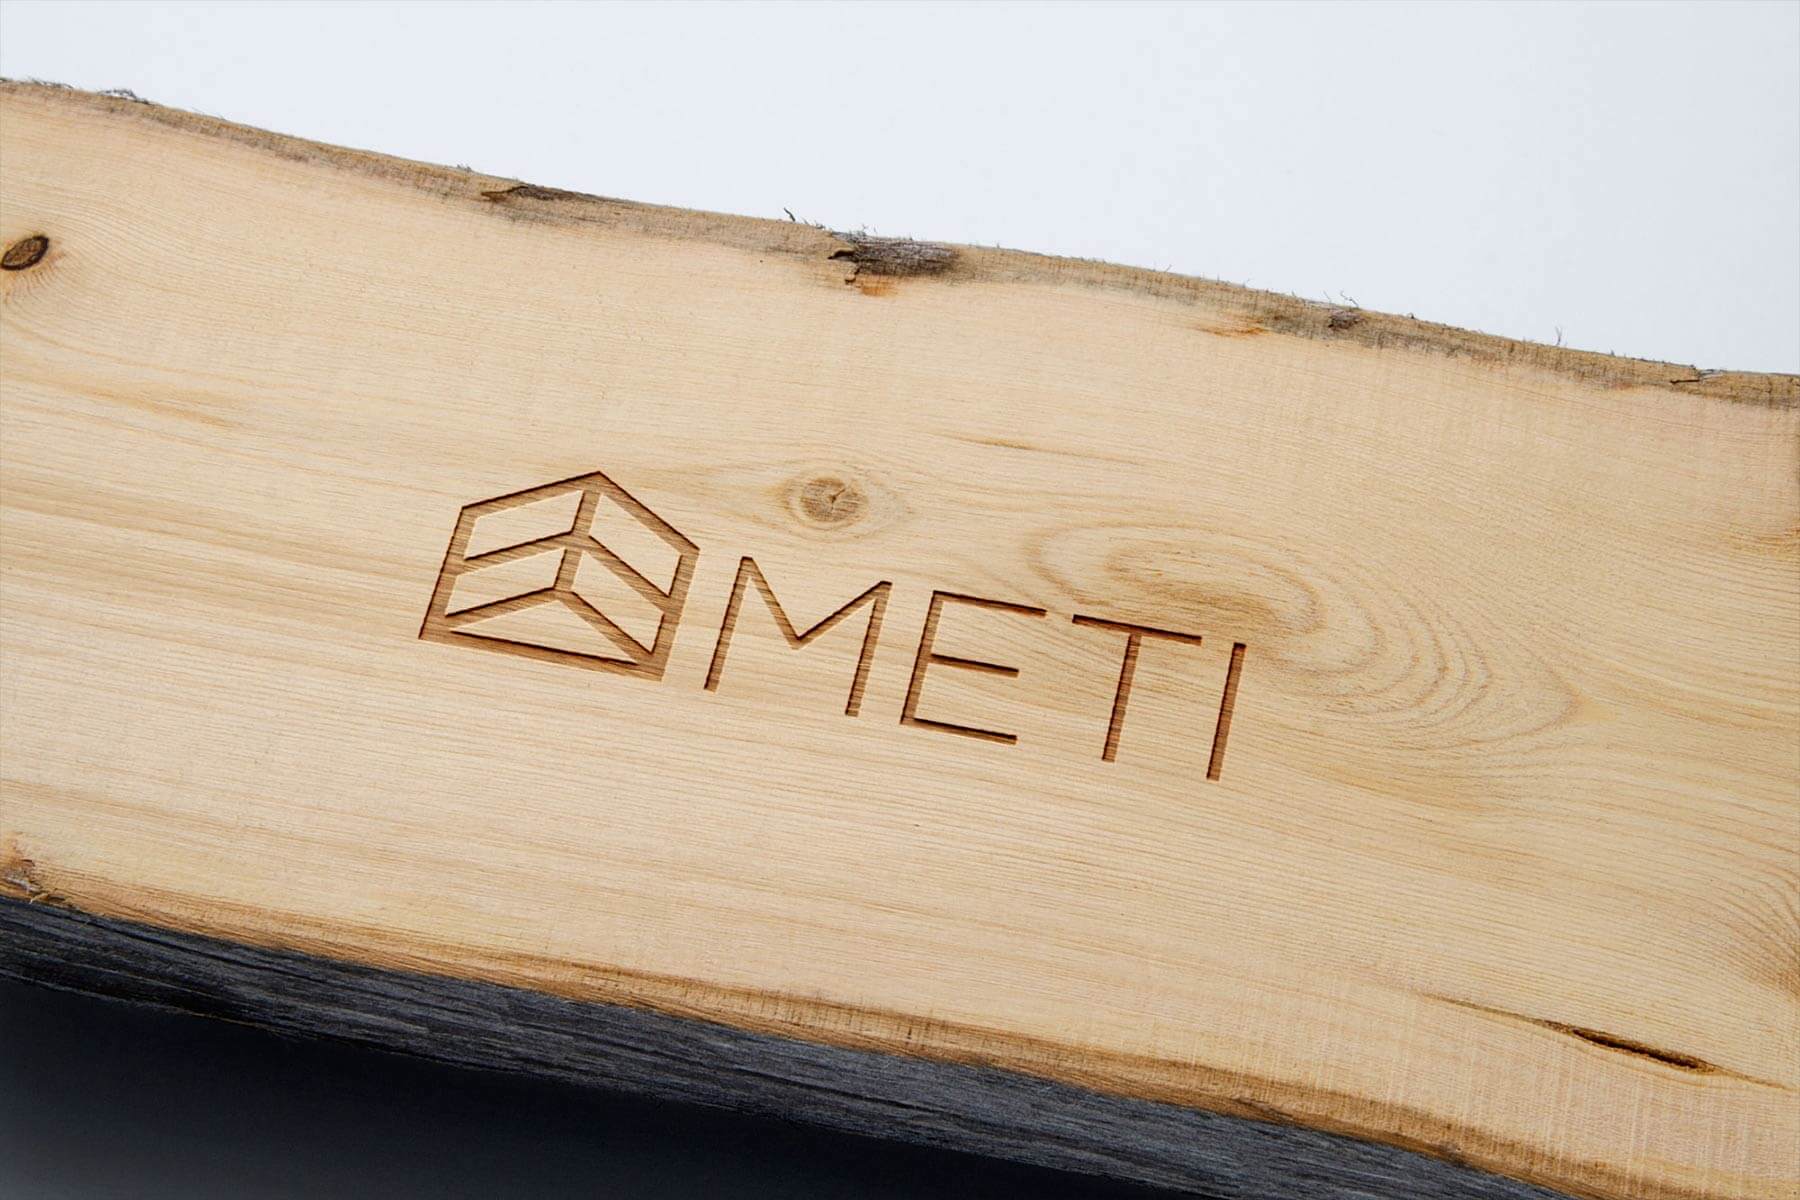 Logo e brand identity di Meti realizzato da SEBA! grafico di Gravellona Toce nel VCO dell'incisione del logo su legno